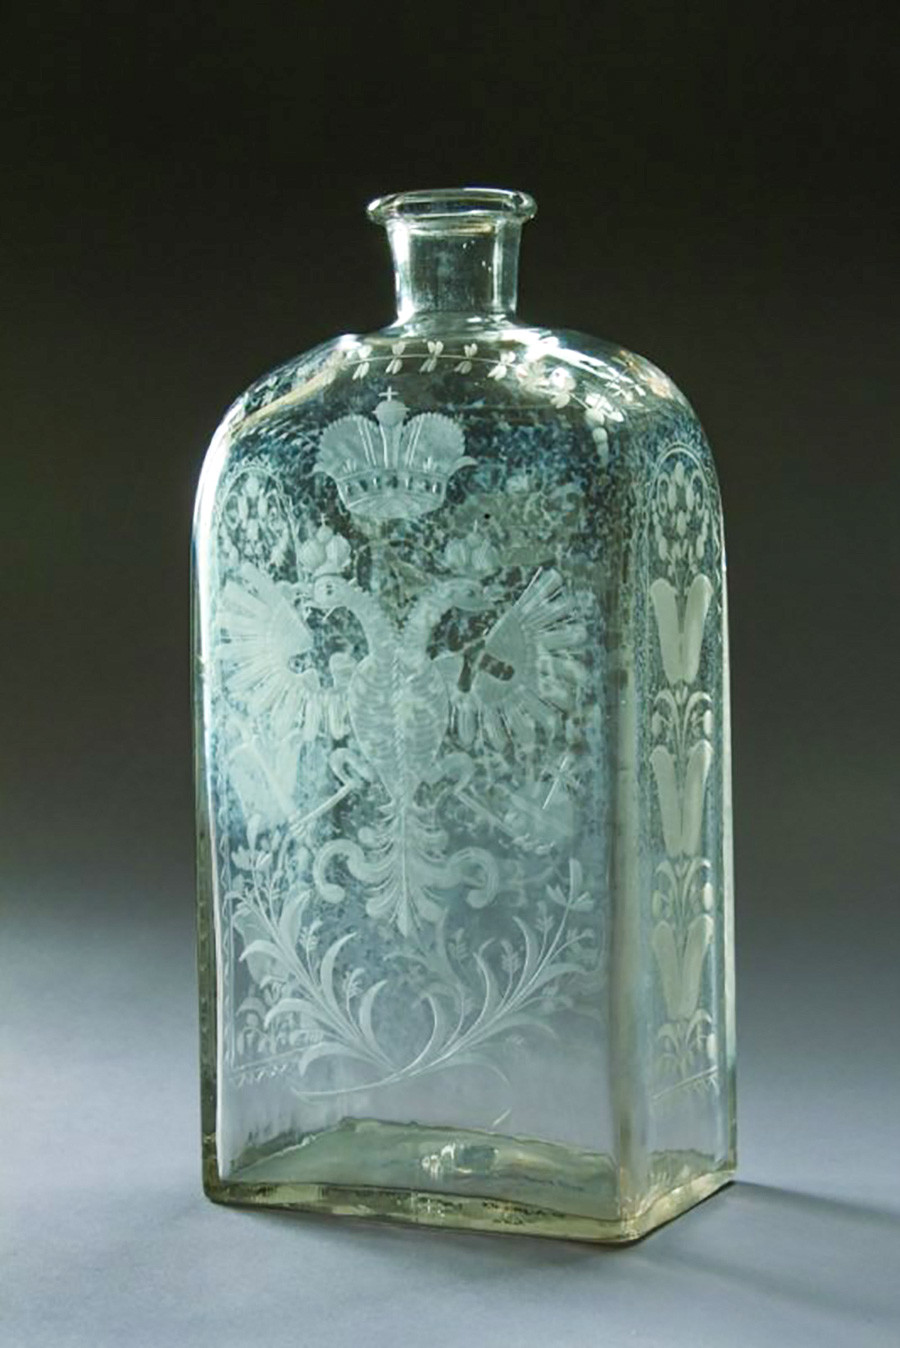 Eine russische Spirituosenflasche aus dem 18. Jahrhundert